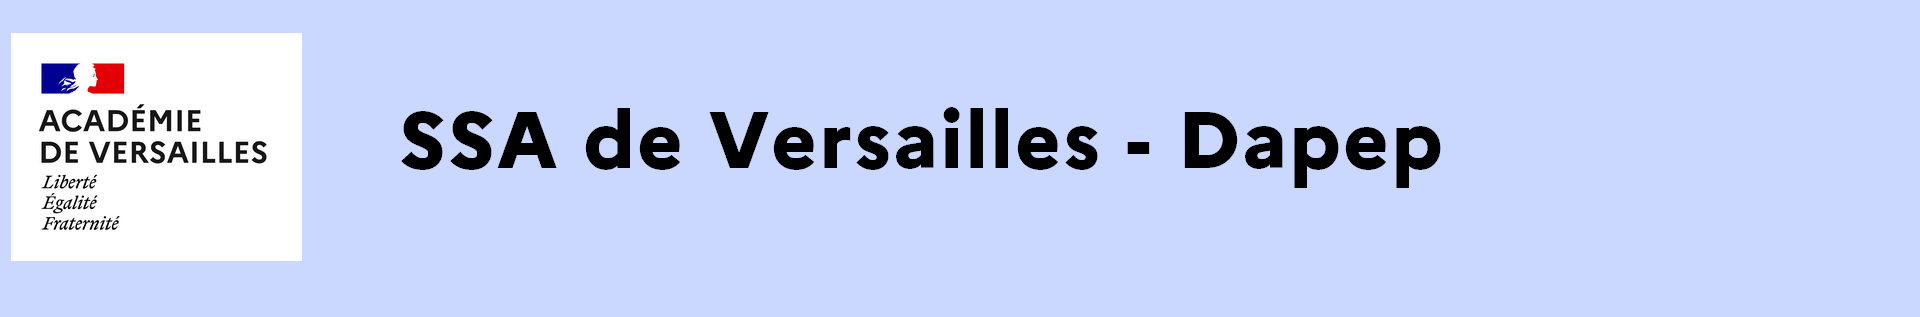 Headband SSA de Versailles - Dapep